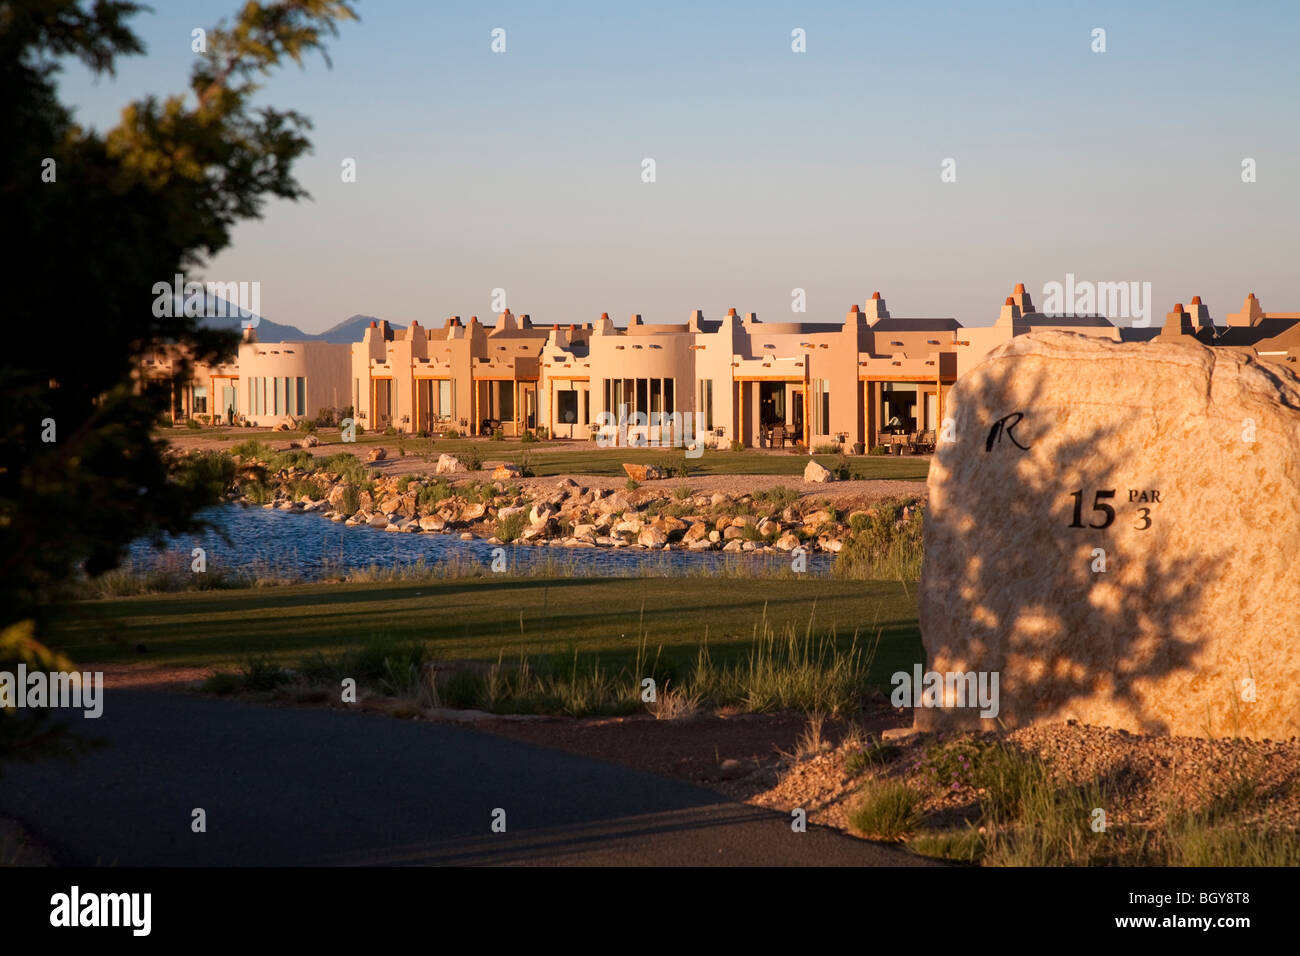 Adobe case di stile al Rainmakers campo da golf di sviluppo, Ruidoso, Nuovo Messico, STATI UNITI D'AMERICA Foto Stock